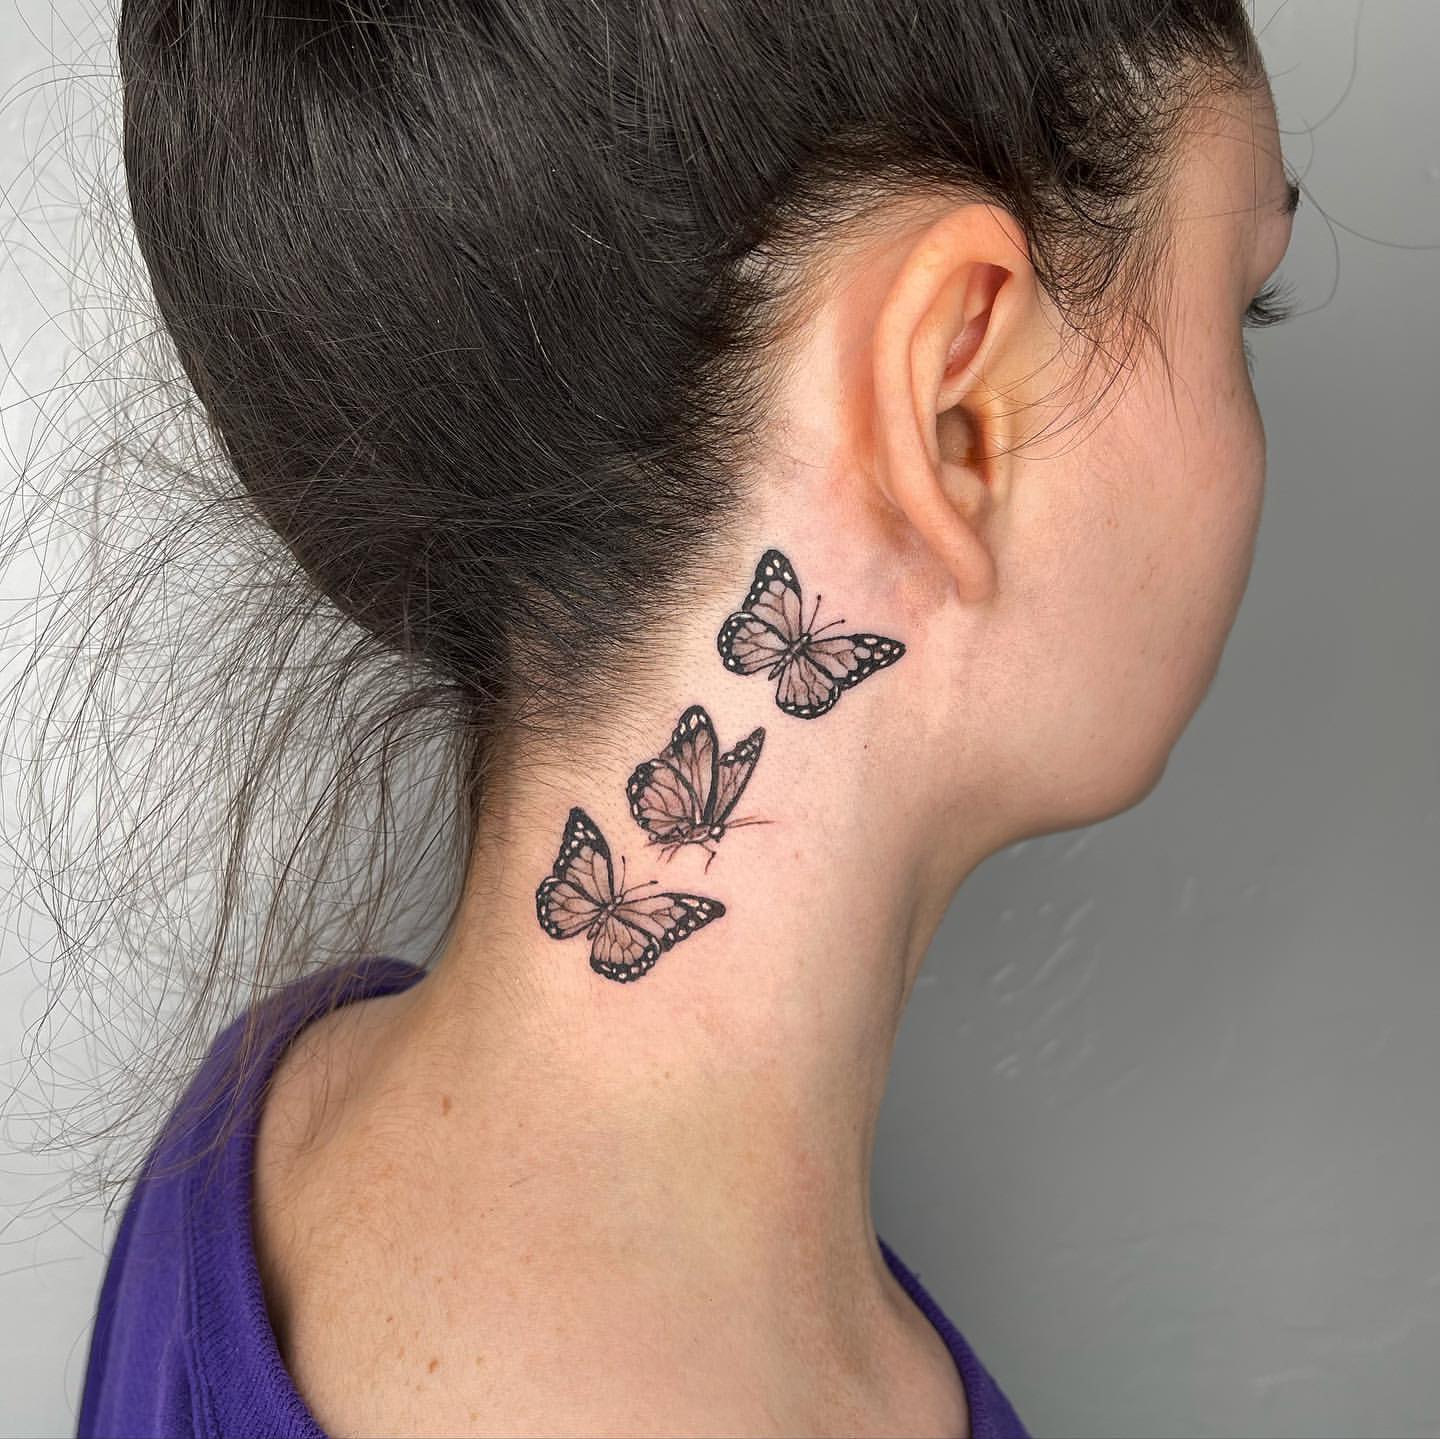 Butterfly Behind Ear Tattoo Ideas 9